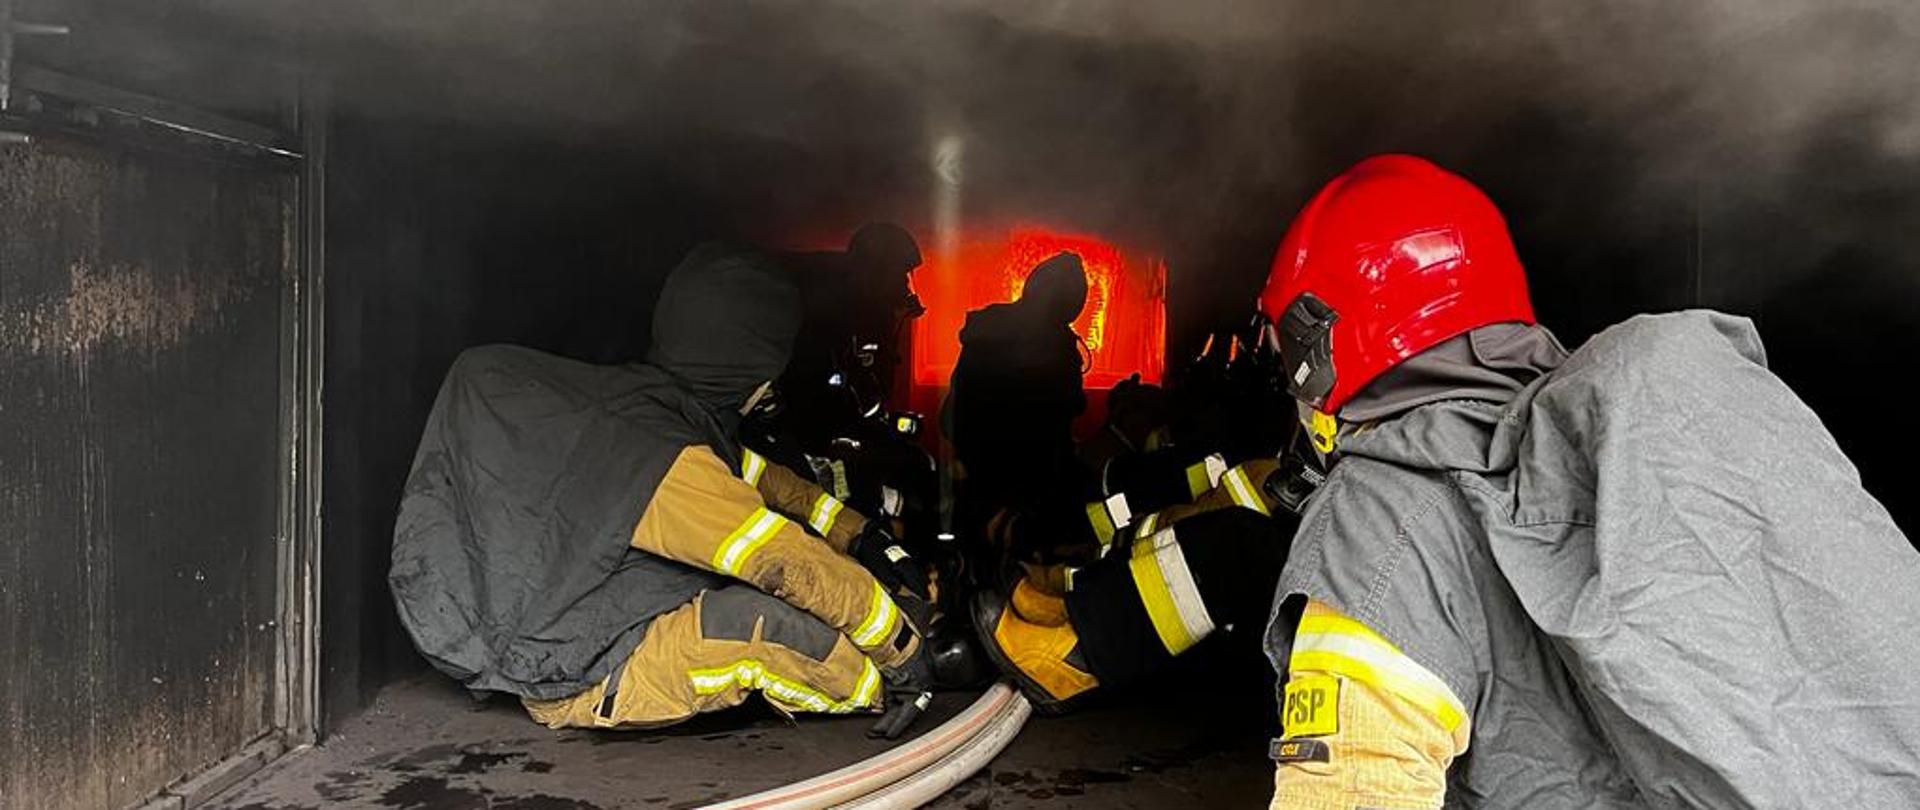 Strażacy PSP uczą strażaków ochotniczej straży pożarnej zachowania w komorze rozgorzeniowej. Strażacy w umundurowaniu bojowych z hełmami i w pełnym zabezpieczeniu realizują ćwiczenia wewnątrz komory rozgorzeniowej. Strażacy siedzą na podłodze a w tle widoczny ogień pożaru. Nad strażakami gęsty szary dym.